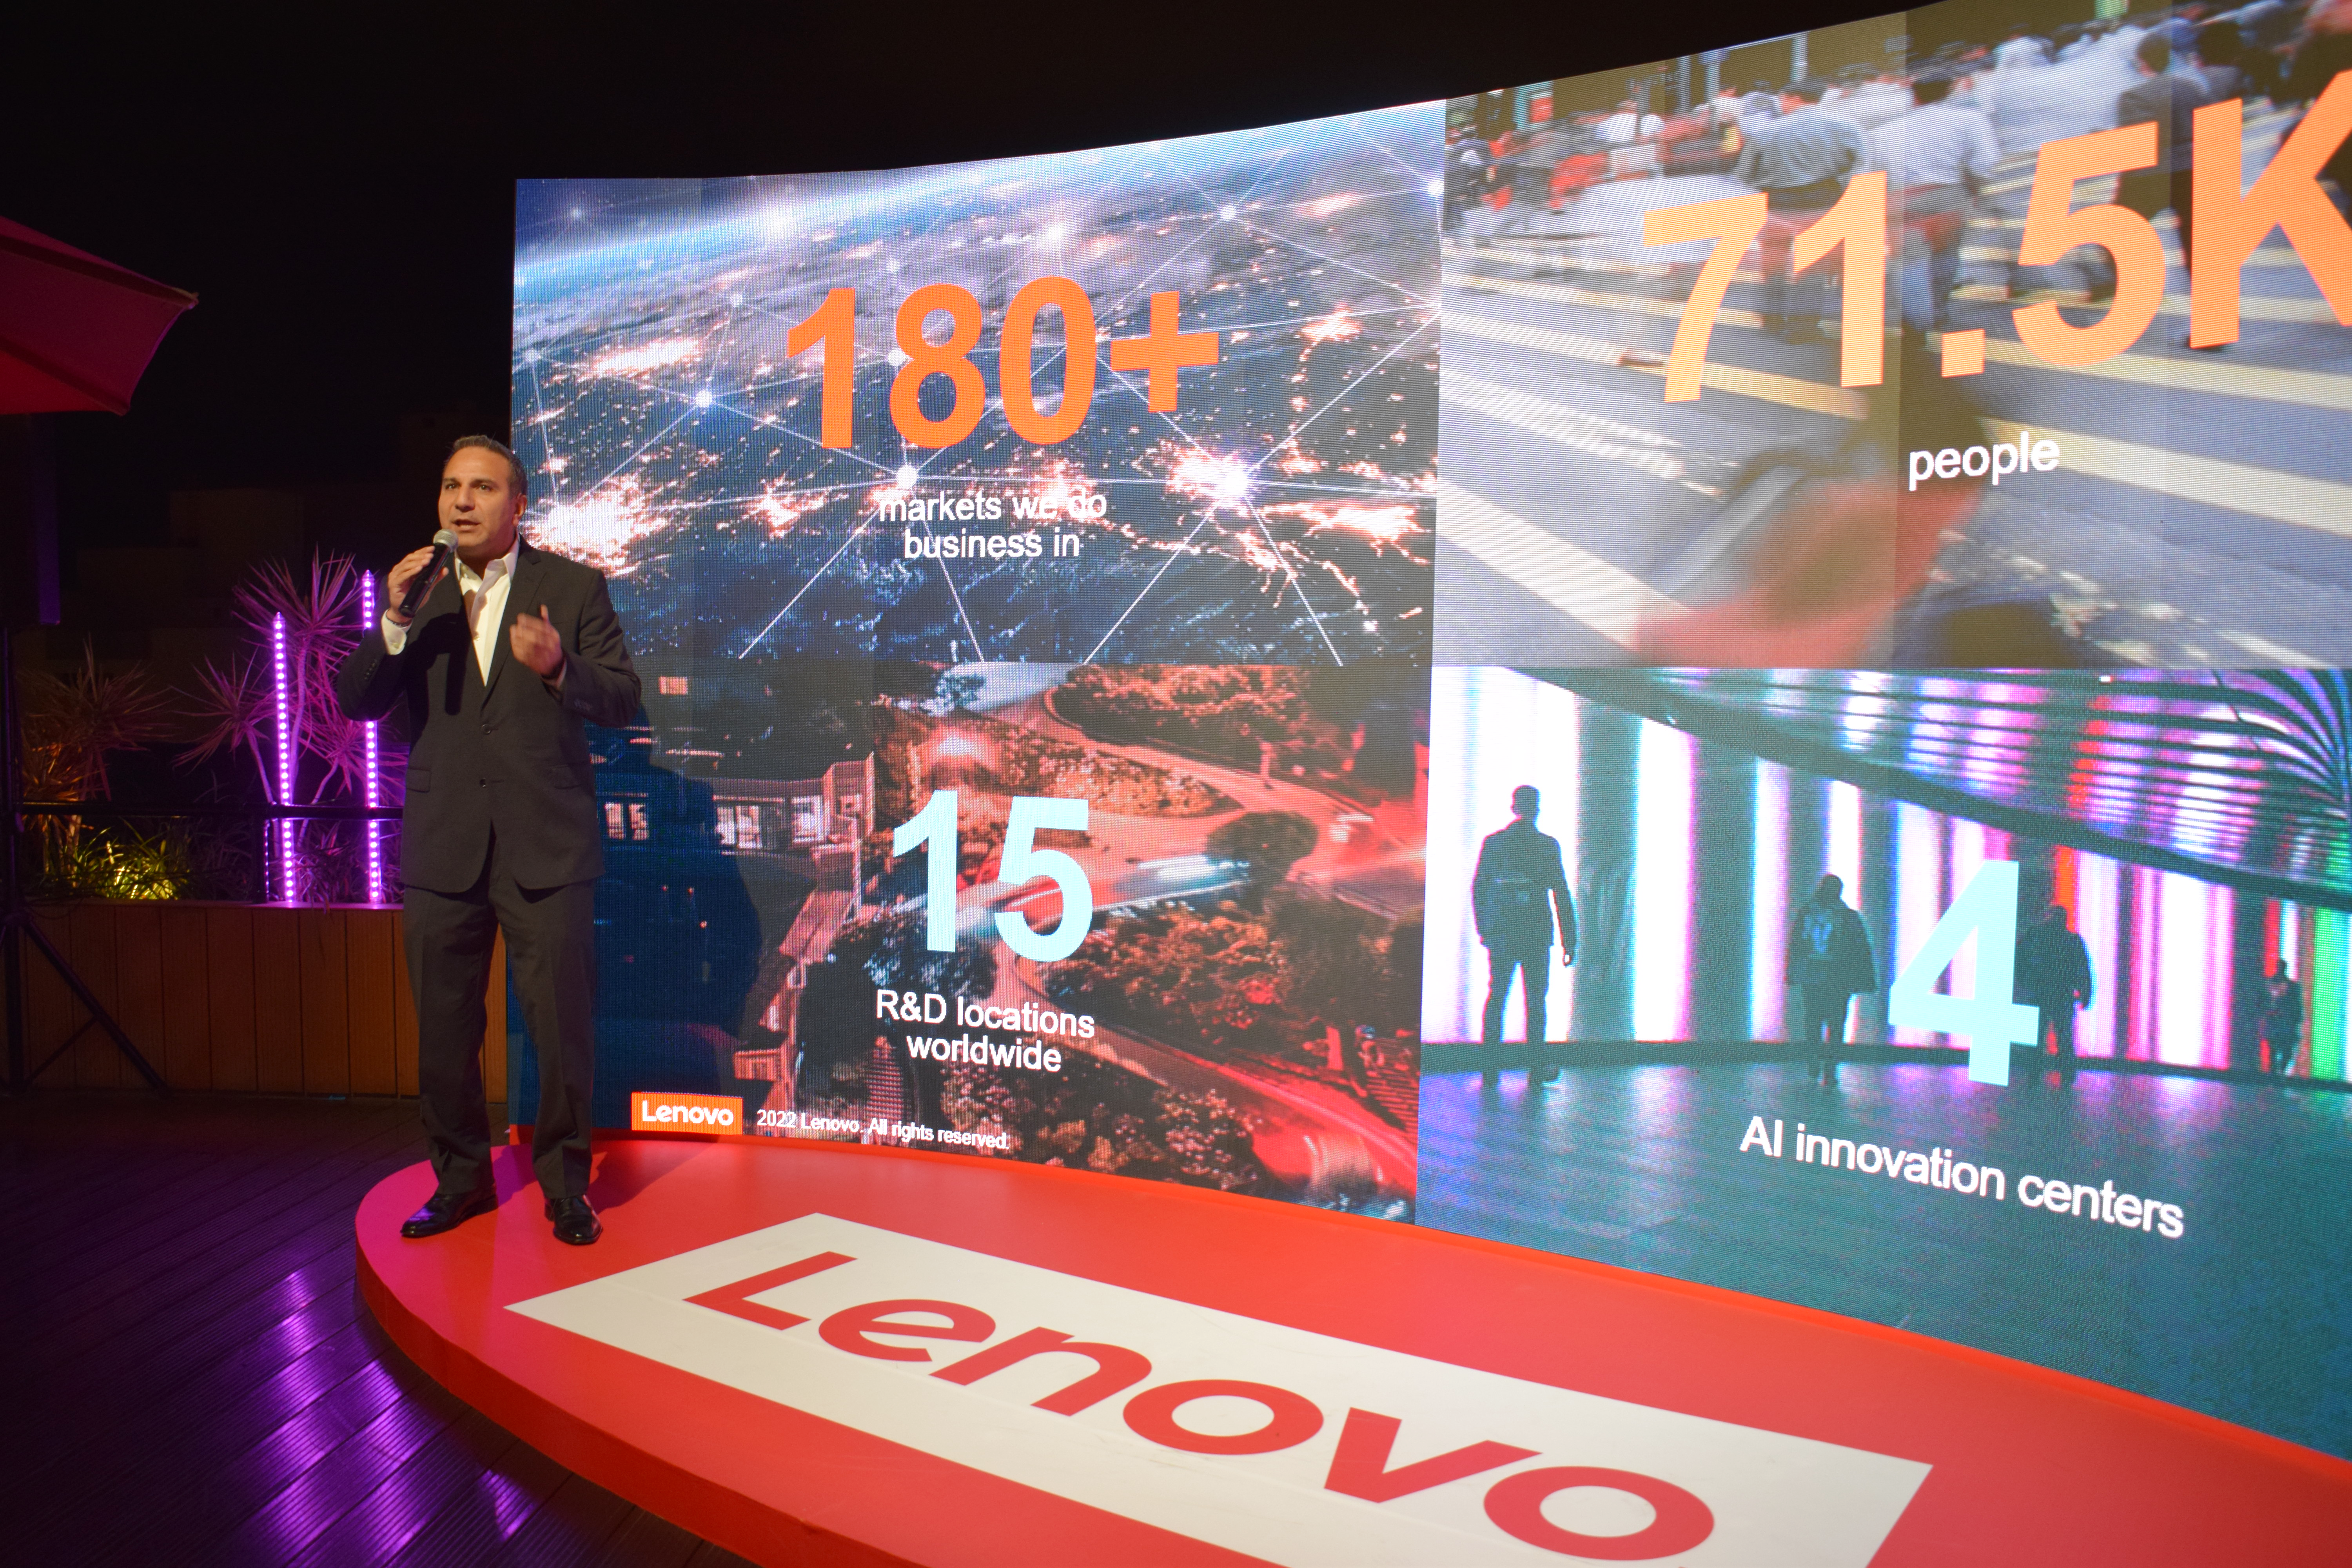 Lenovo Perú celebró los 30 años de Thinkpad y Thinksystem